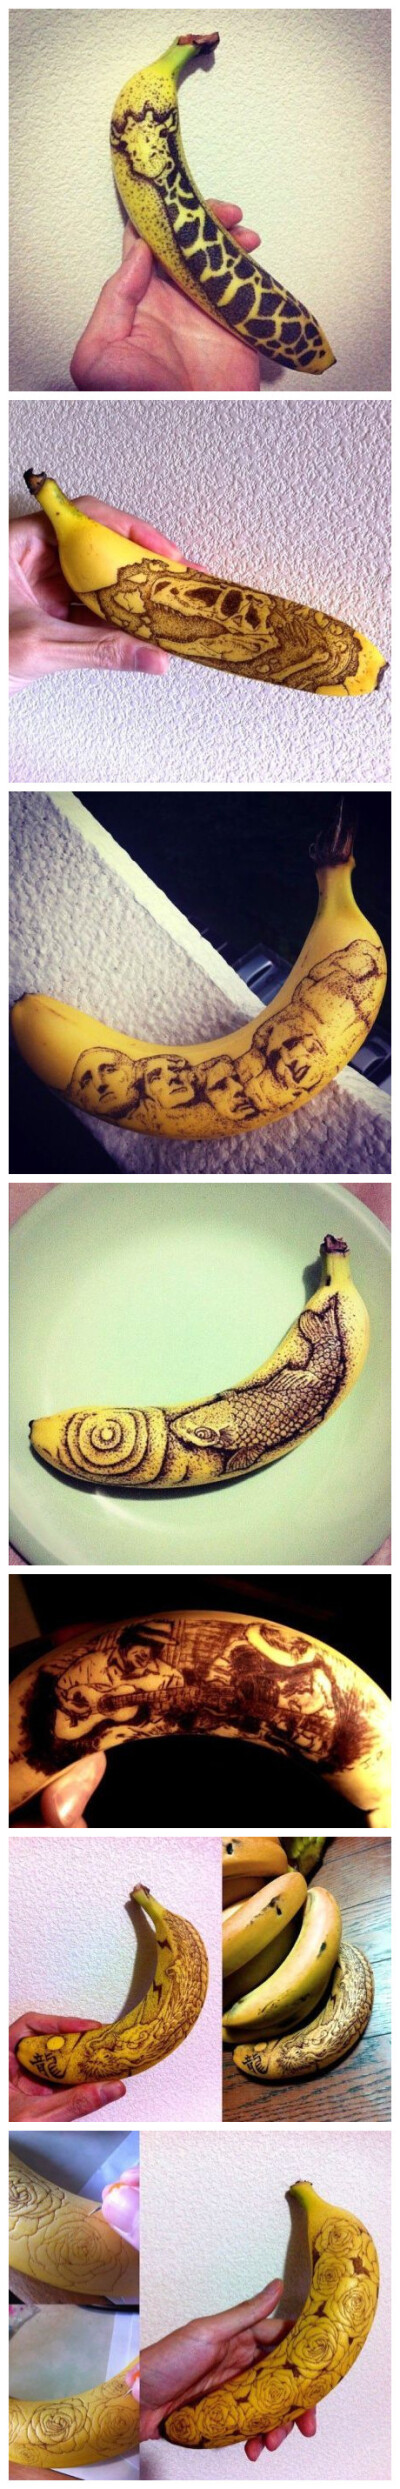 香蕉作画